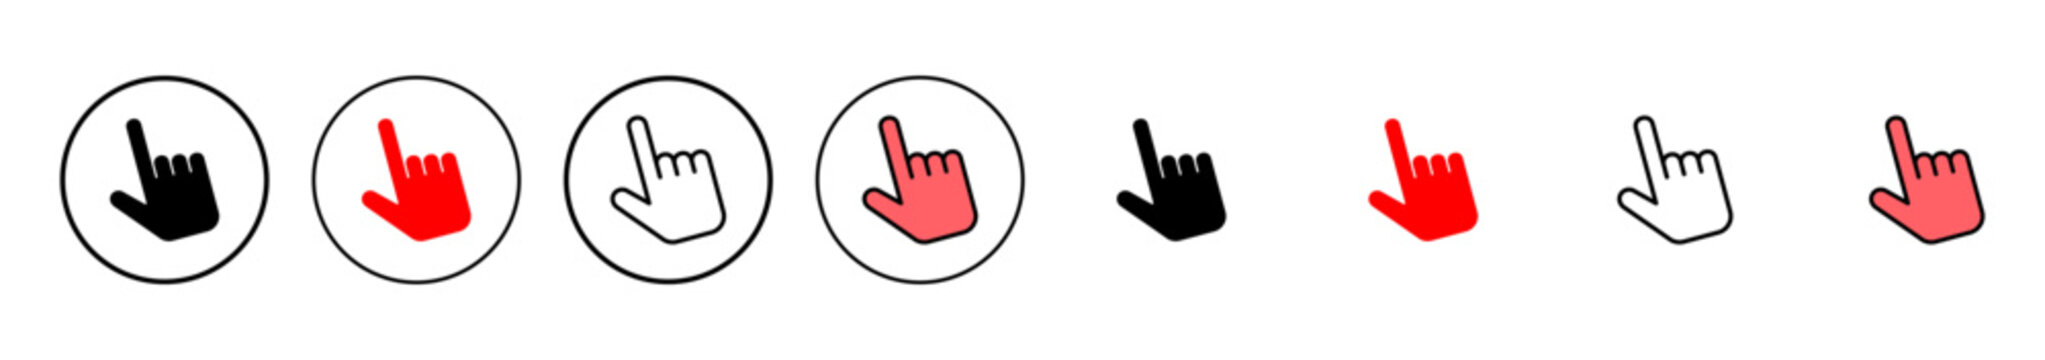 Hand cursor icon vector illustration. cursor sign and symbol. hand cursor icon clik